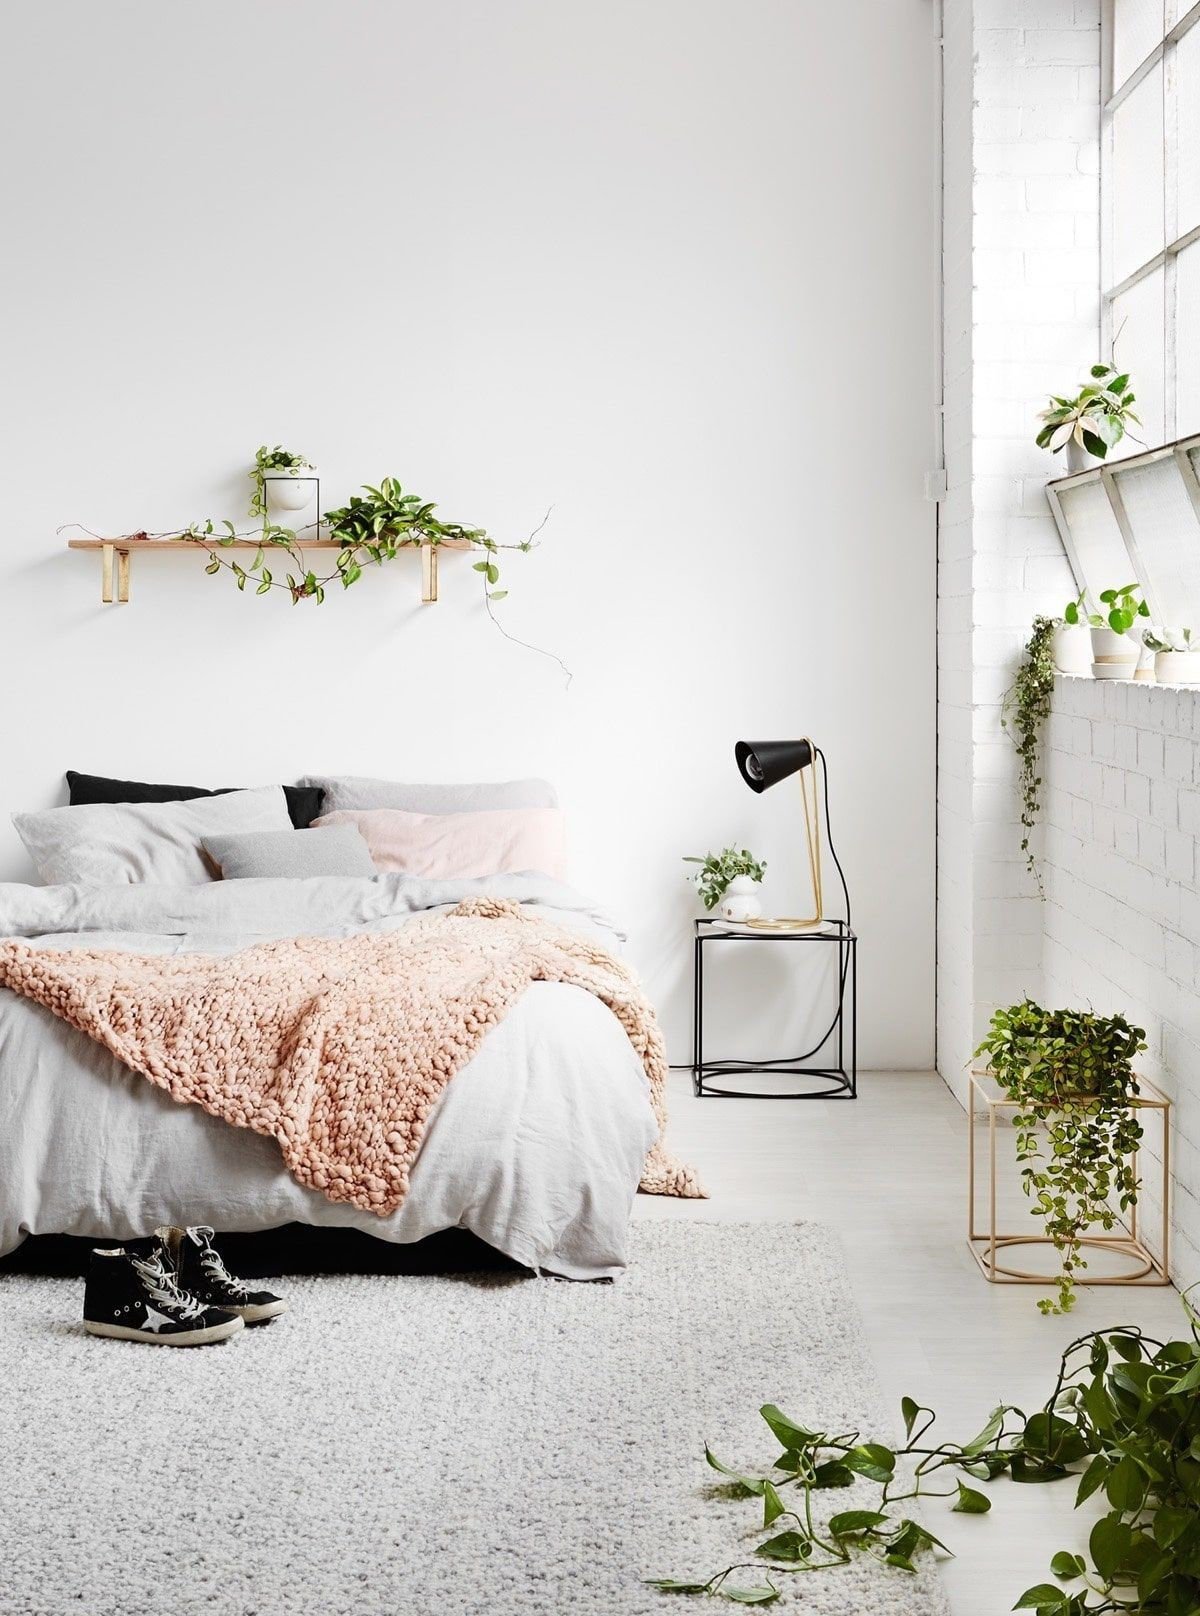 Cây xanh mang lại sự ấm áp cho nội thất đơn sắc của phòng ngủ, tạo cảm giác đơn giản và gần gũi với thiên nhiên